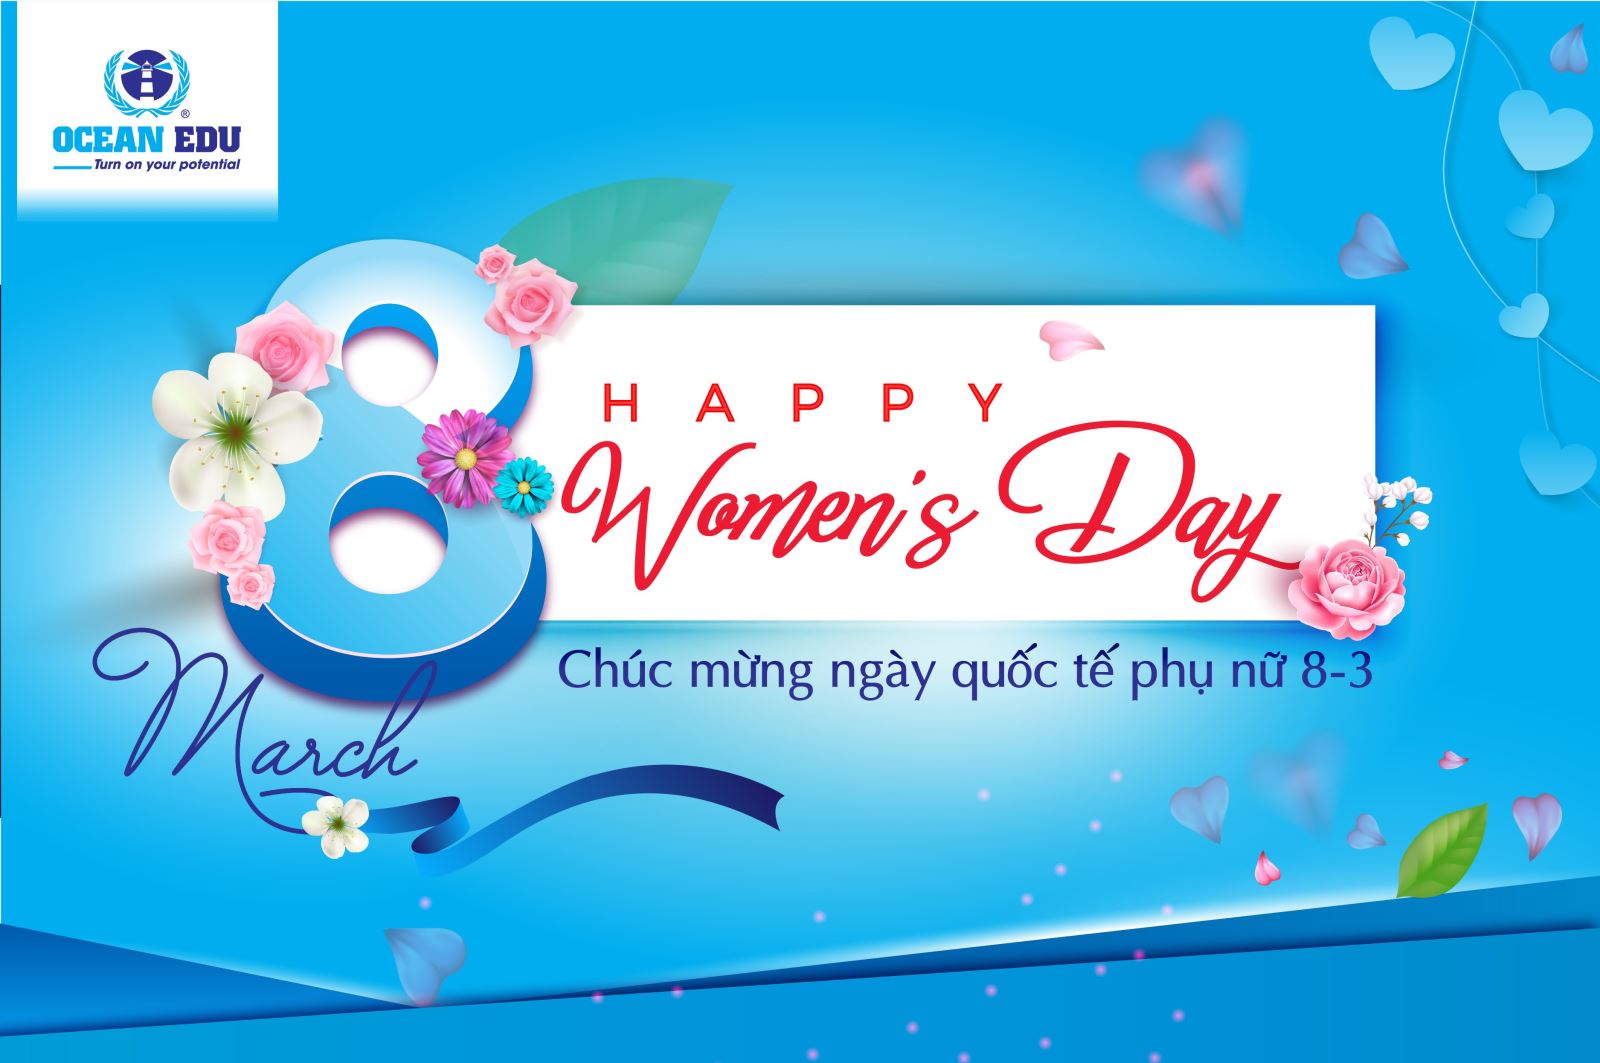 Chúc mừng Ngày Quốc tế Phụ nữ 8/3: Ocean Edu xin gửi lời chúc mừng đến tất cả những người phụ nữ đặc biệt trên thế giới trong ngày Quốc tế Phụ nữ 8/